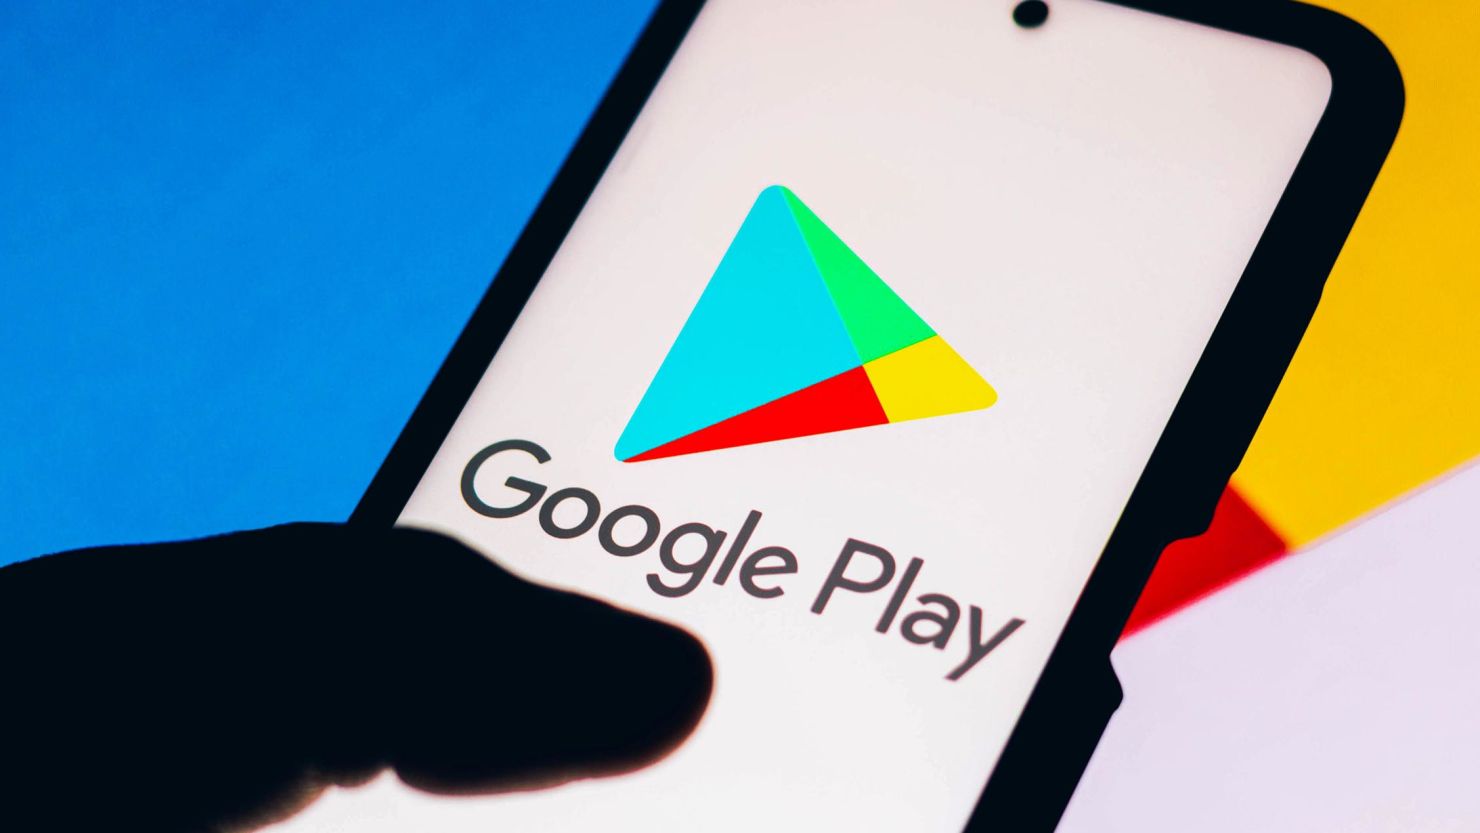 Verbesserungen bei Google Play: neues Bewertungssystem und automatisches Öffnen von Apps